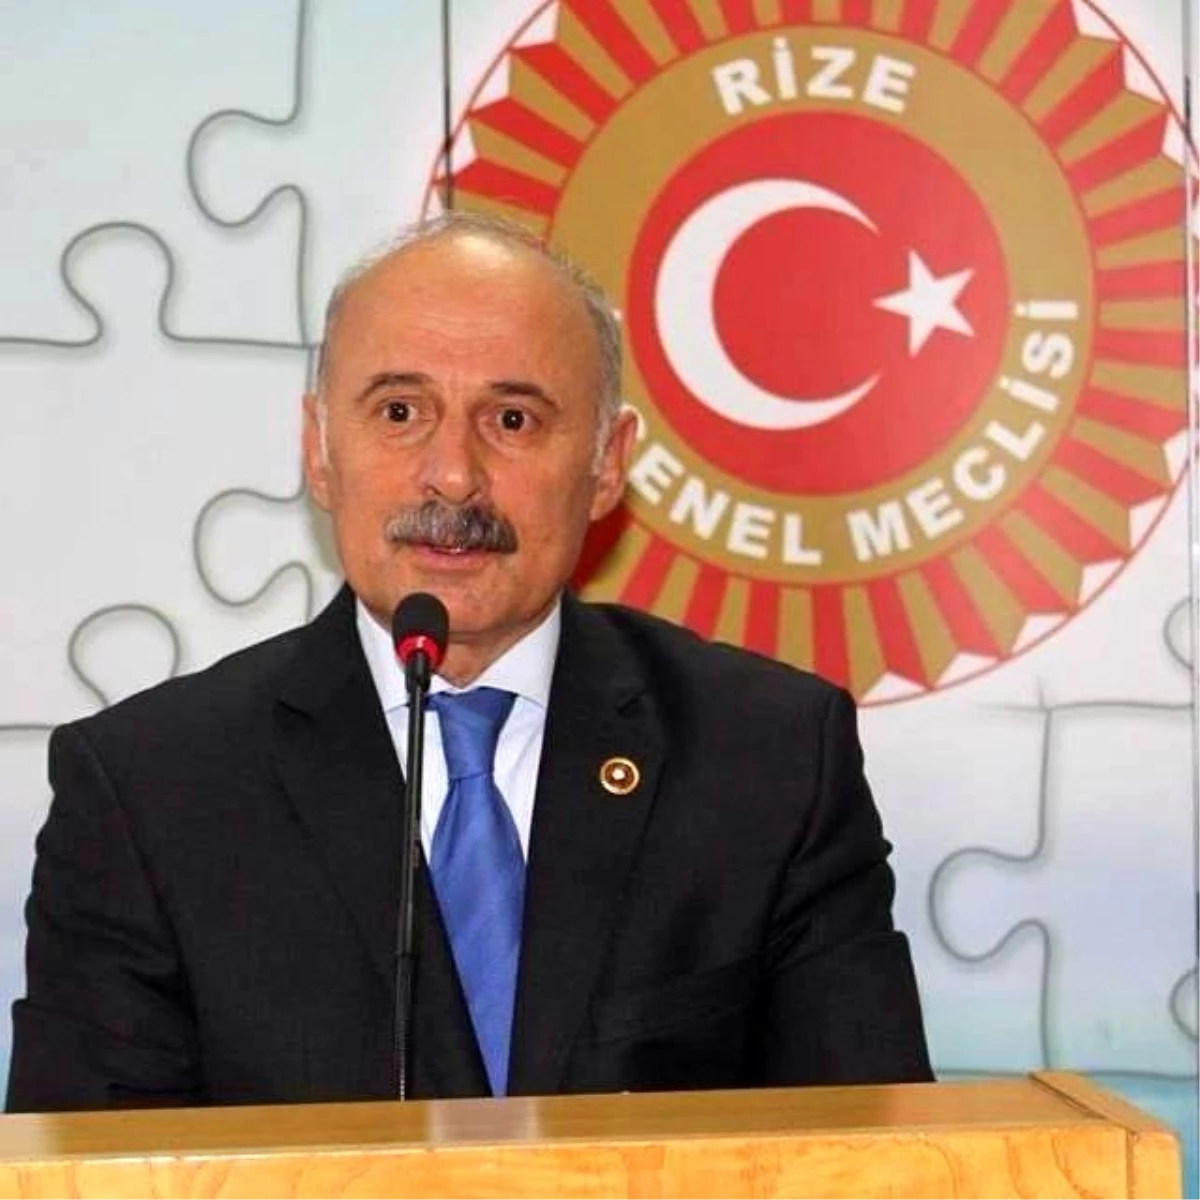 Rize İl Genel Meclisi Başkanı Mehmet Kazancı Yeniden Başkan Seçildi